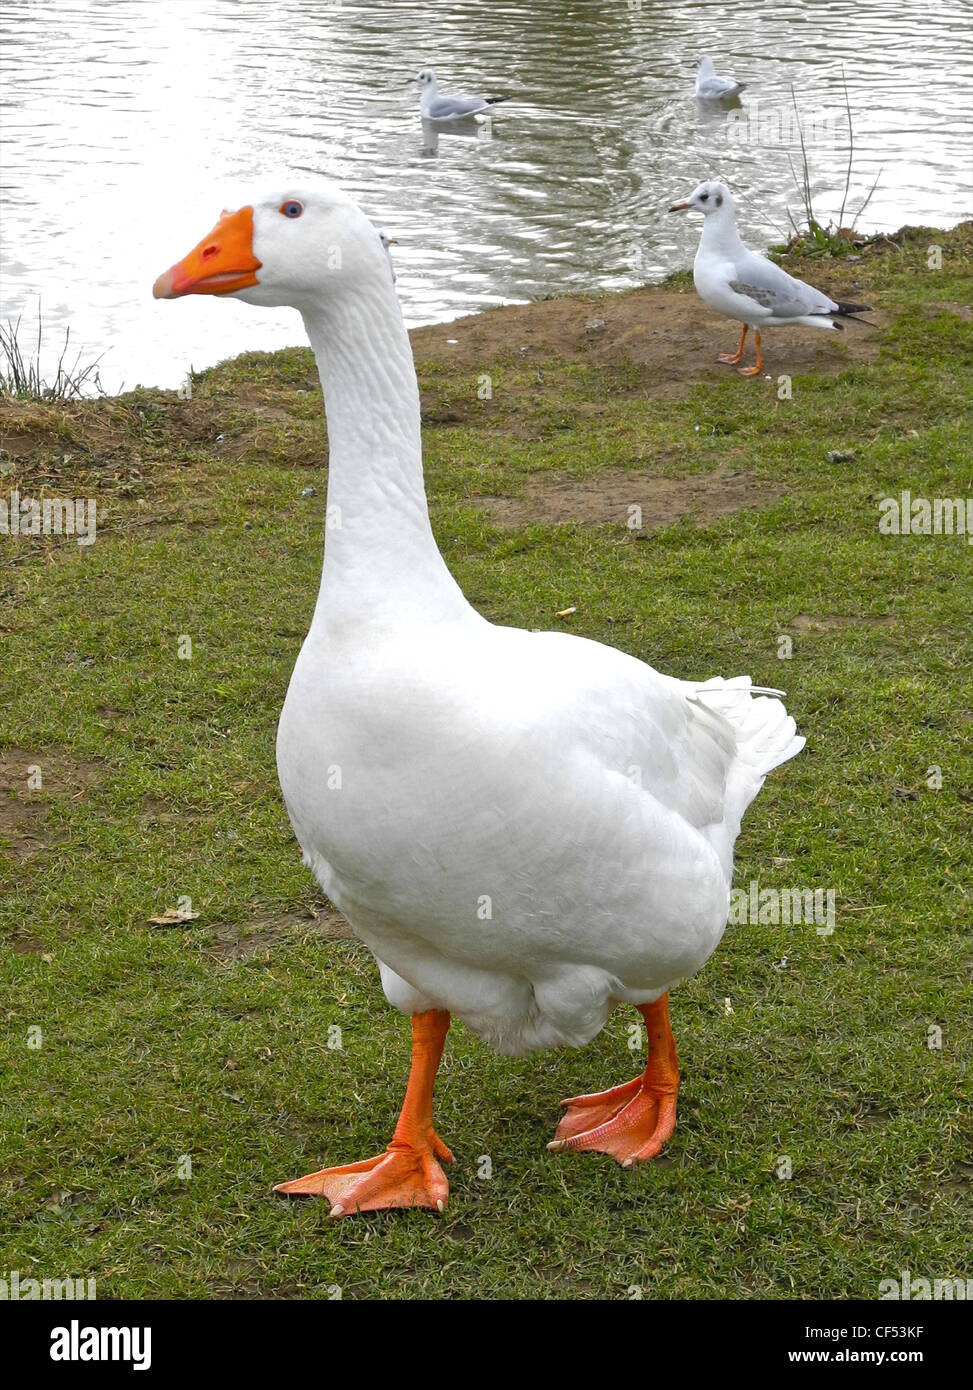 The domestic goose (Anser anser f. domestica) Stock Photo